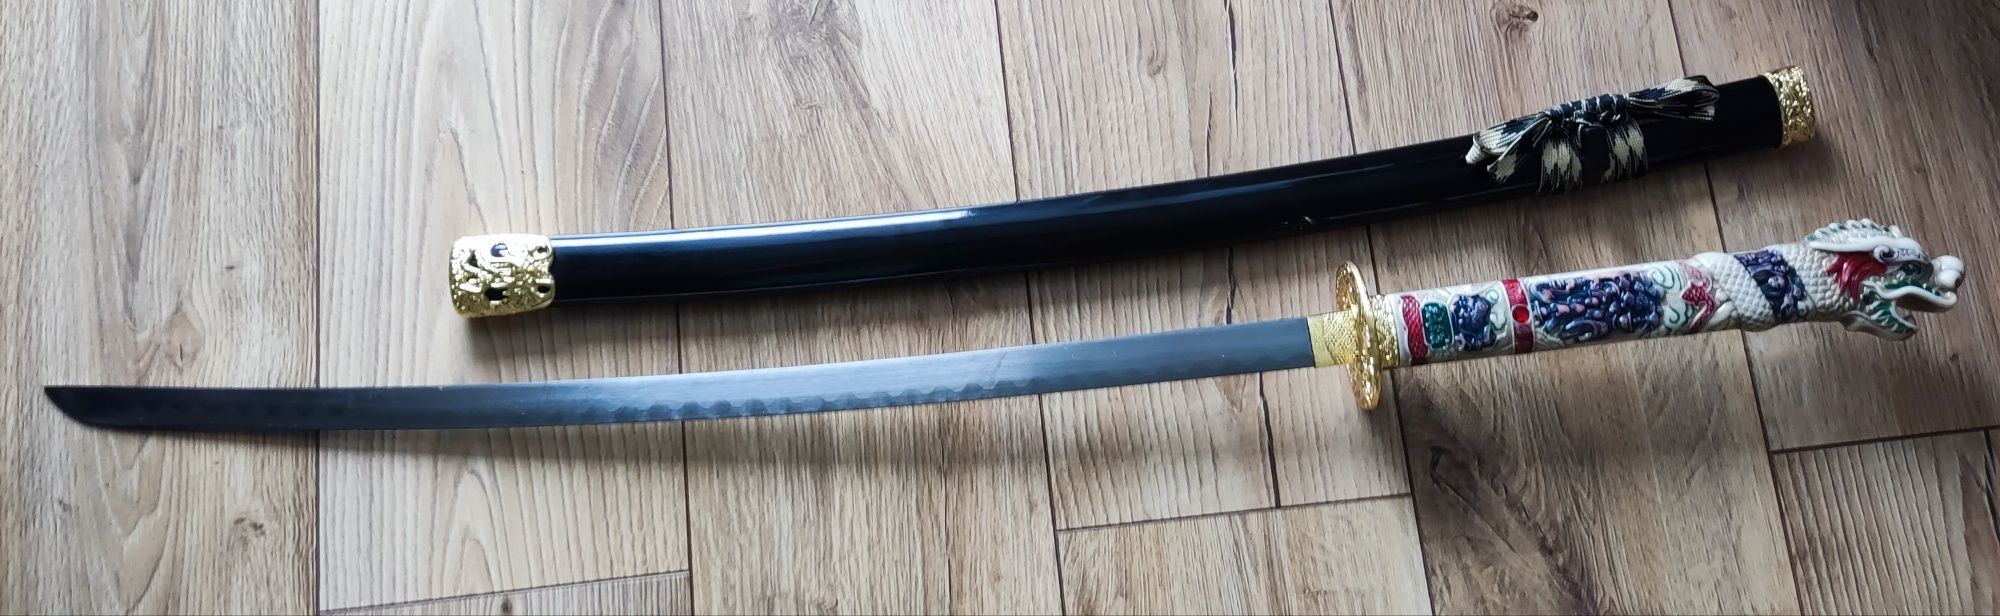 Miecz samurajski